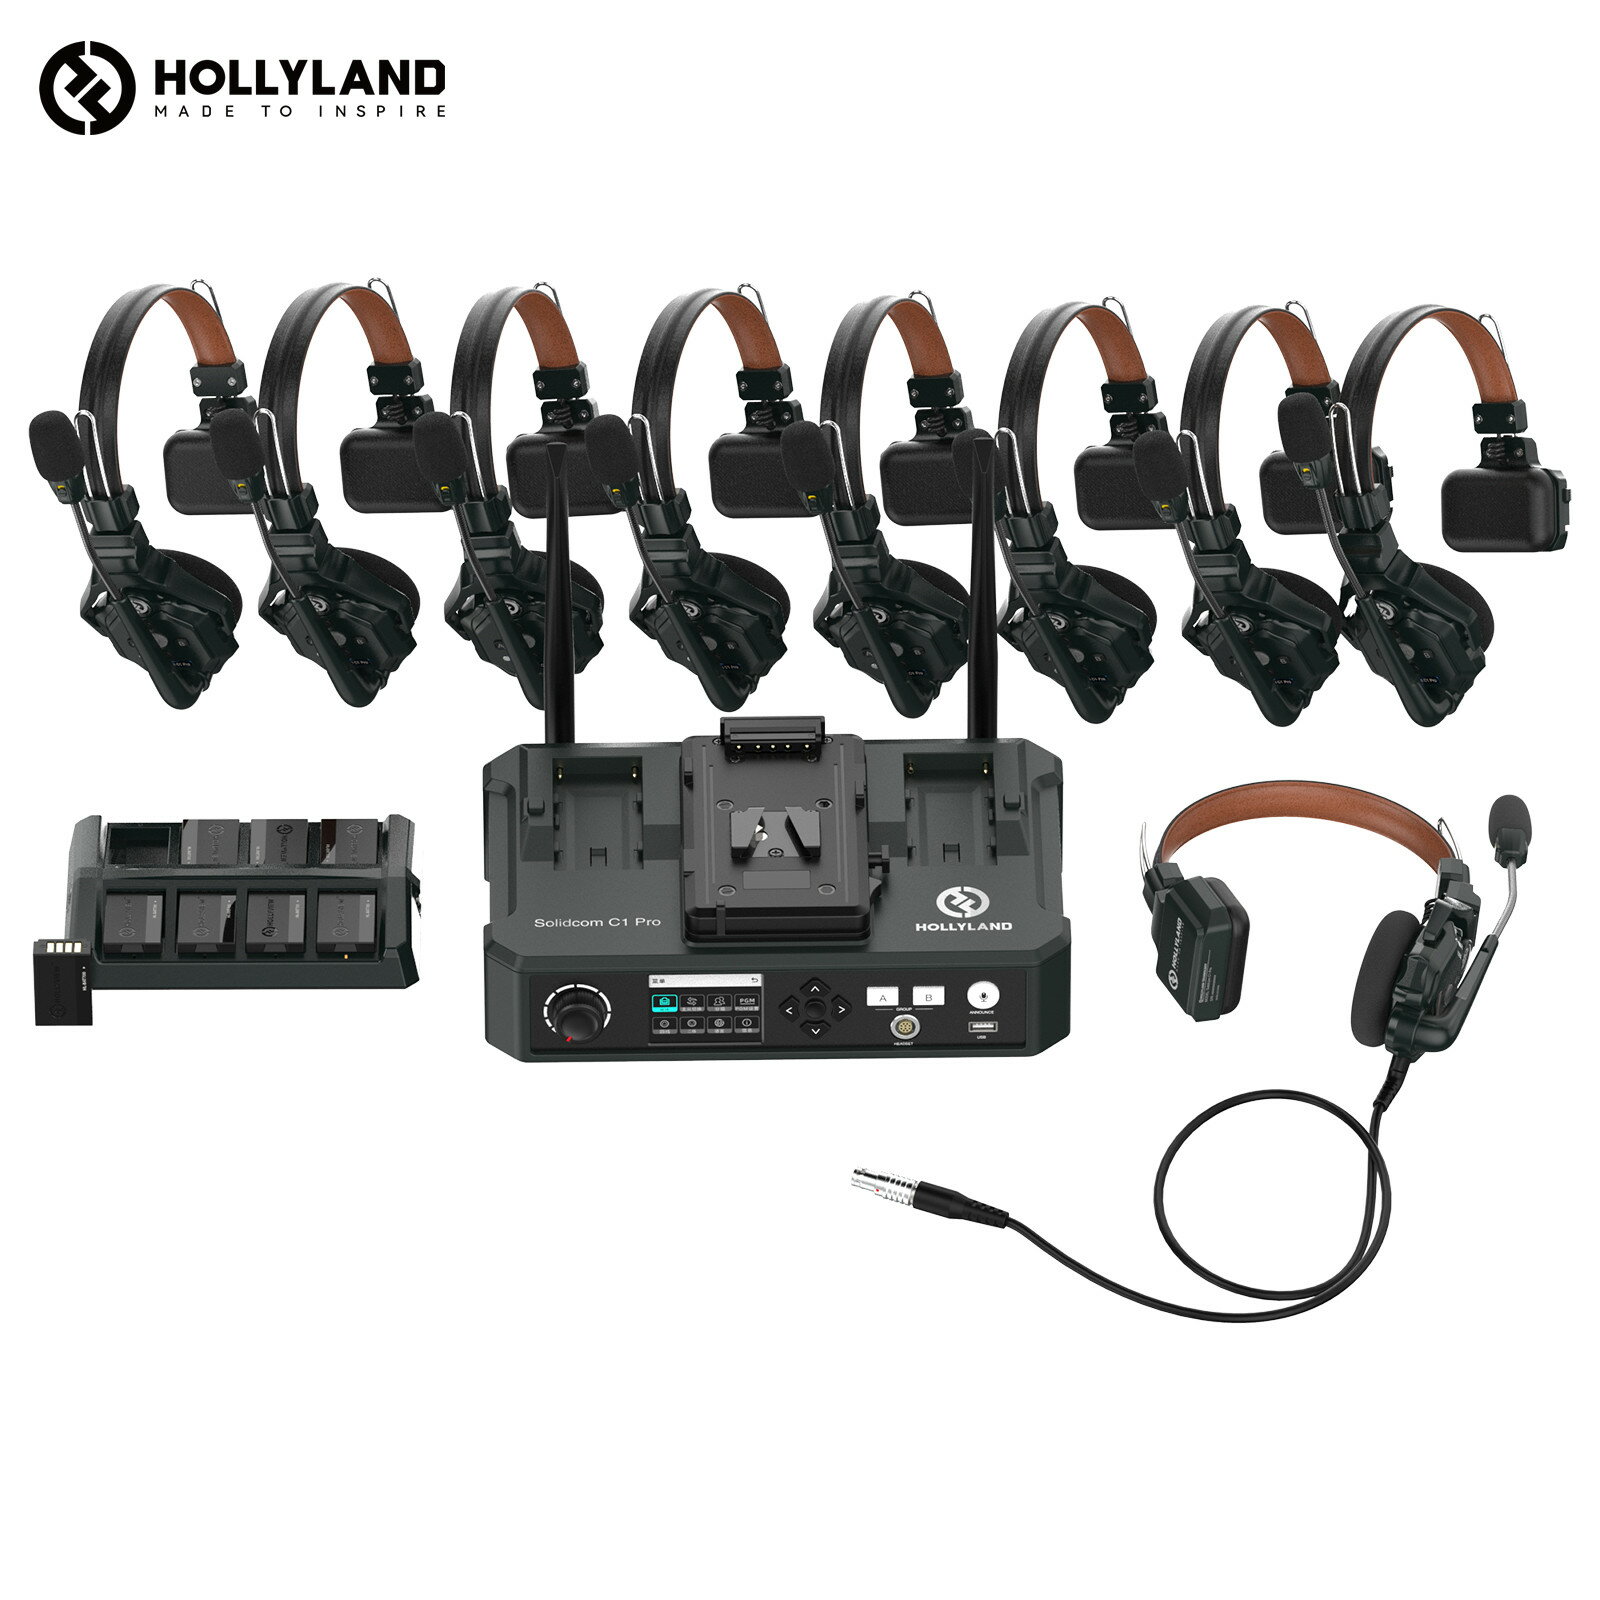 【特典付き】Hollyland Solidcom C1 Pro-HUB8S ワイヤレスインカム 9台セット ノイズキャンセリング・PTT・ミュート機能付き 全二重 通話範囲350m 親機x1子機x8 子機増設可能 小型軽量ヘッドセット 設定不要 箱から出してすぐに使える同時通話インカム 1